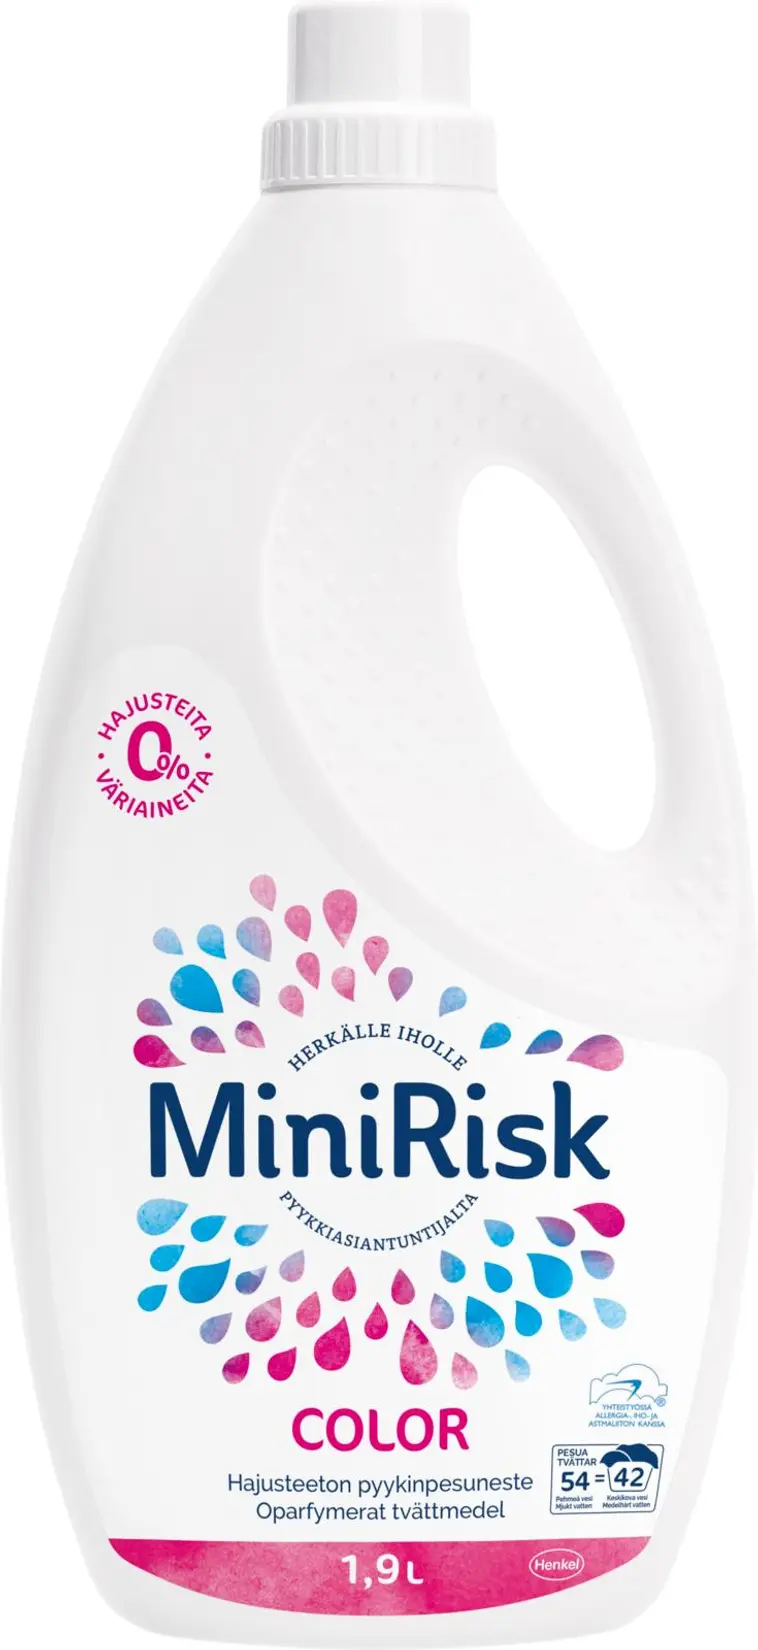 Mini Risk 1,9L Color pyykinpesuneste herkkäihoisille hajusteeton